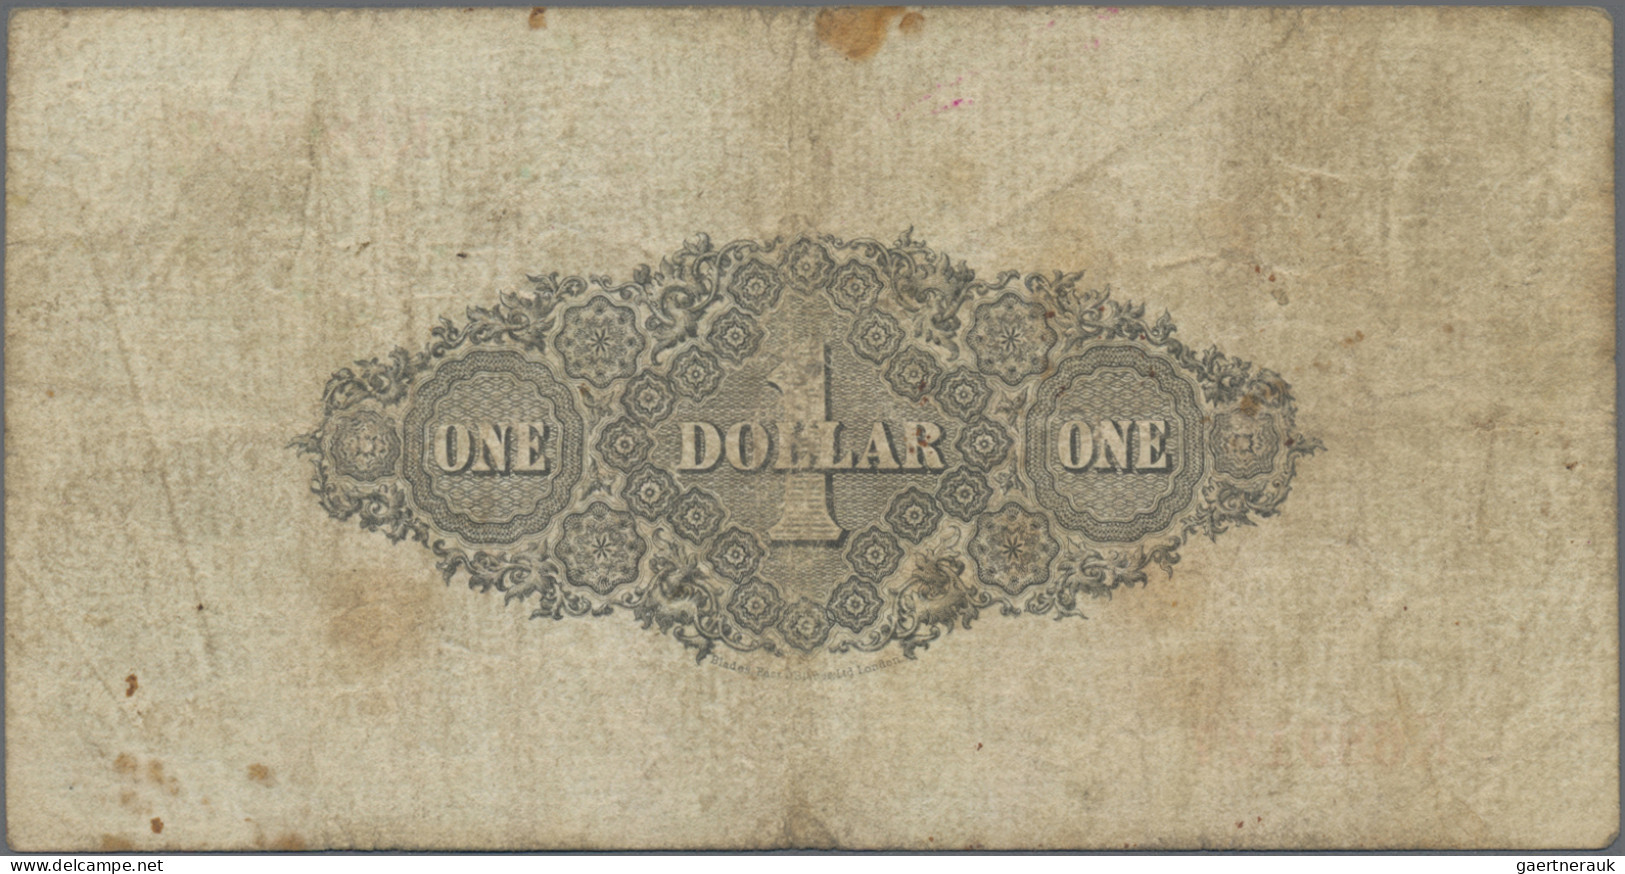 British North Borneo: The British North Borneo Company, 1 Dollar 1st July 1940, - Autres - Afrique